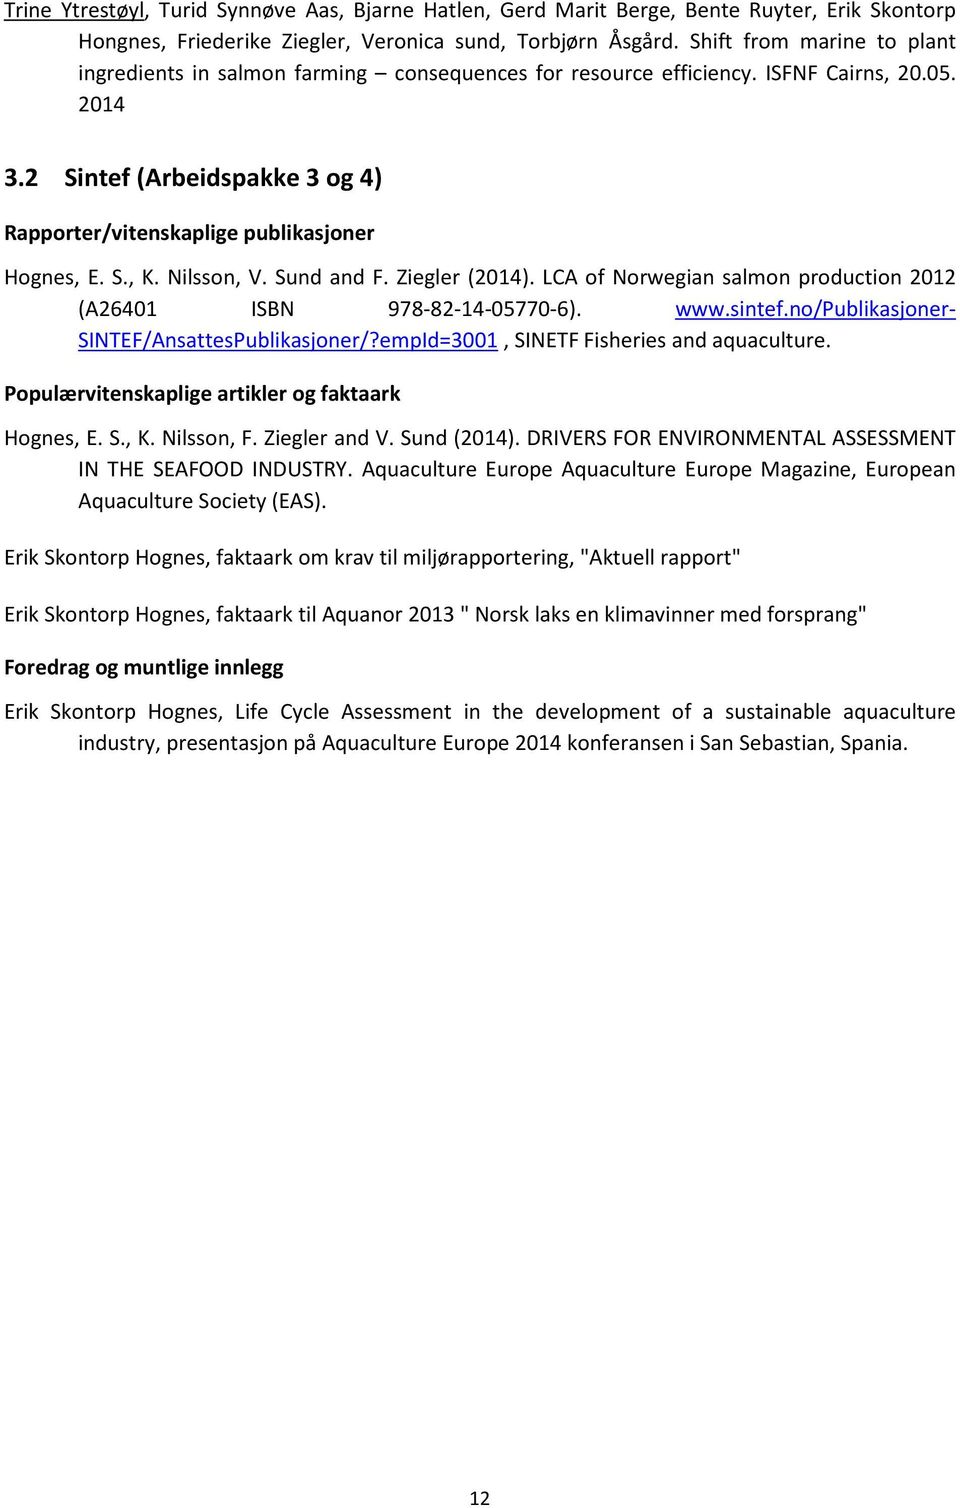 2 Sintef (Arbeidspakke 3 og 4) Rapporter/vitenskaplige publikasjoner Hognes, E. S., K. Nilsson, V. Sund and F. Ziegler (2014). LCA of Norwegian salmon production 2012 (A26401 ISBN 978-82-14-05770-6).